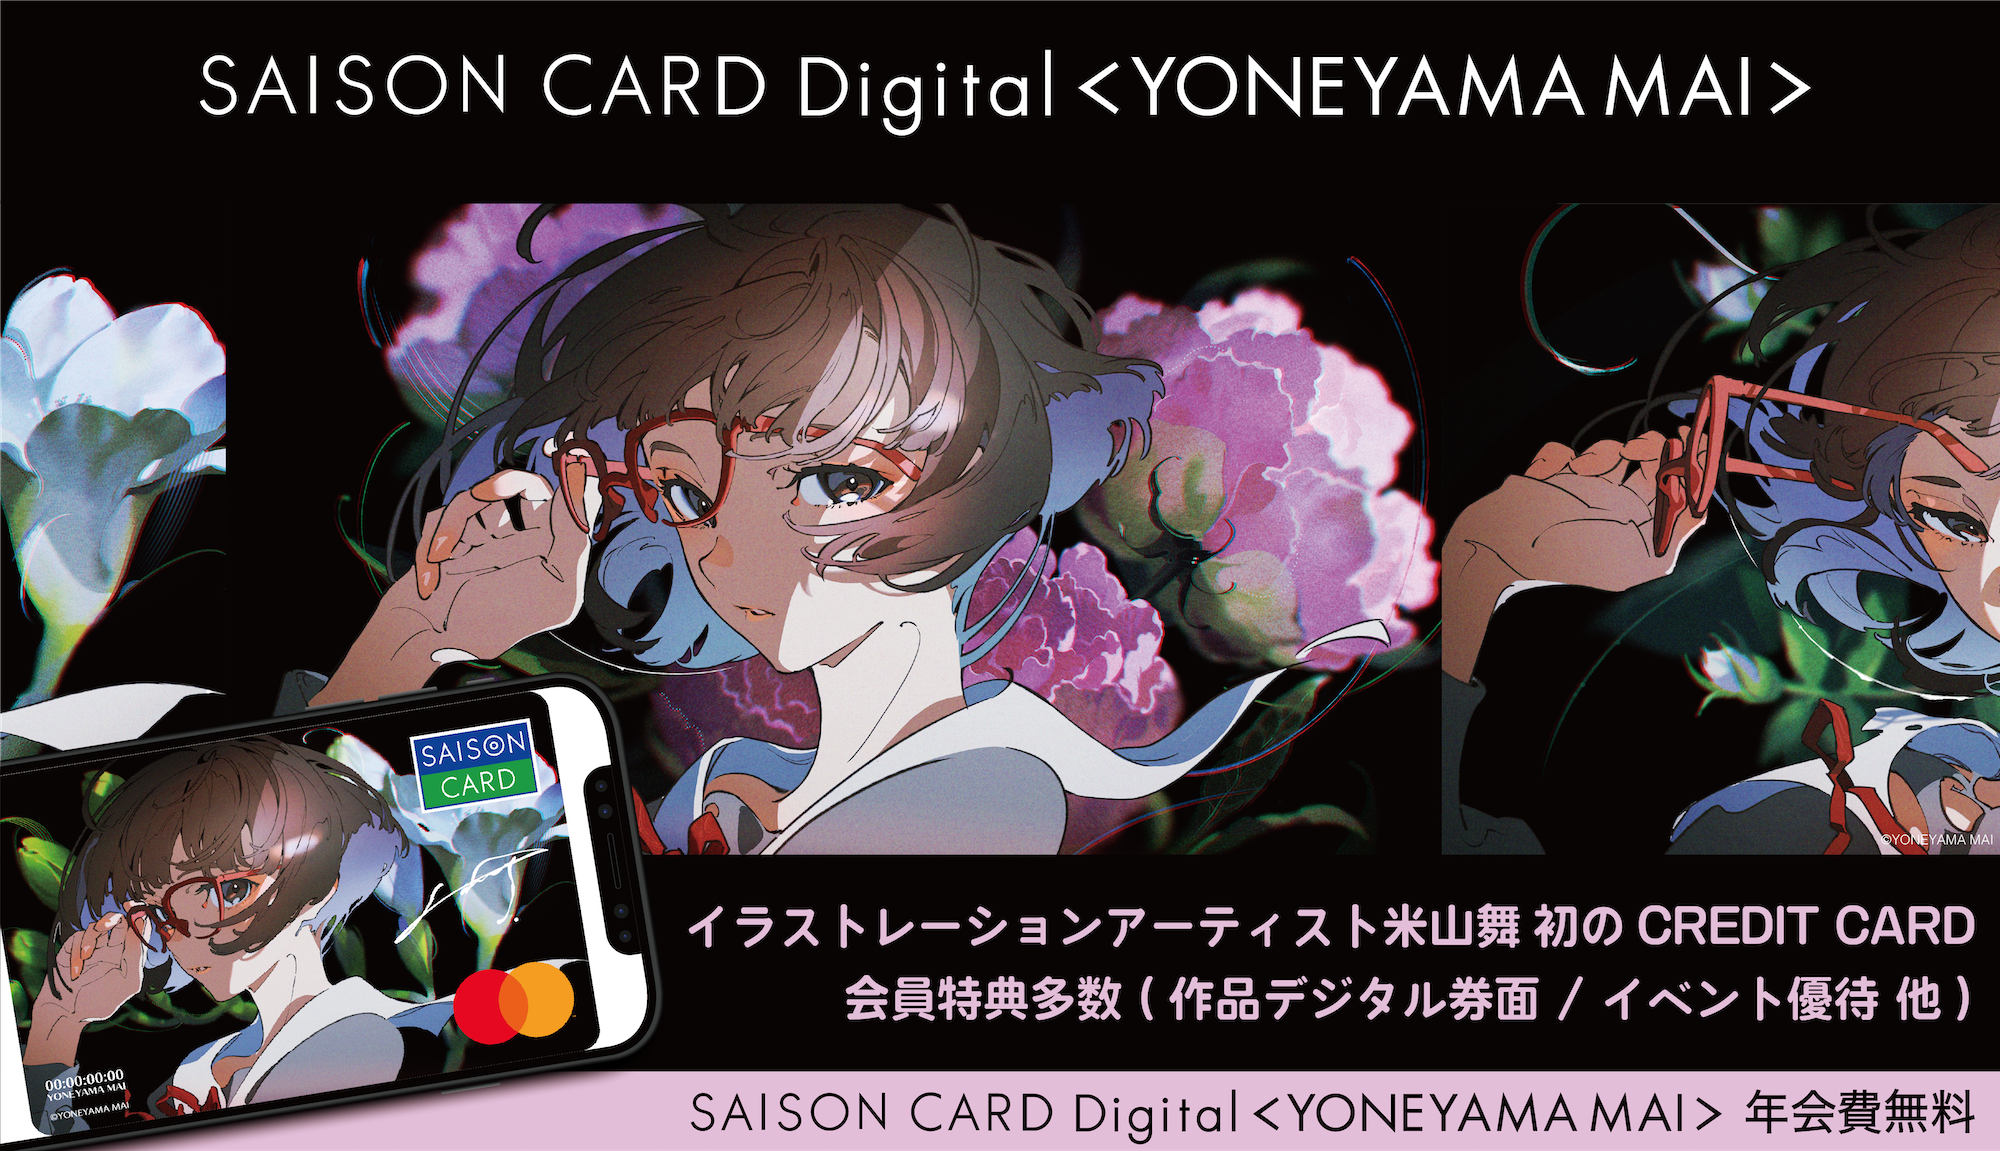 イラストレーションアーティスト 米山舞 初クレジットカードサービス登場 Saison Card Digital Yoneyama Mai 限定アイテムやイベント特典など入会者限定特典が多数登場 株式会社あっとあっとのプレスリリース